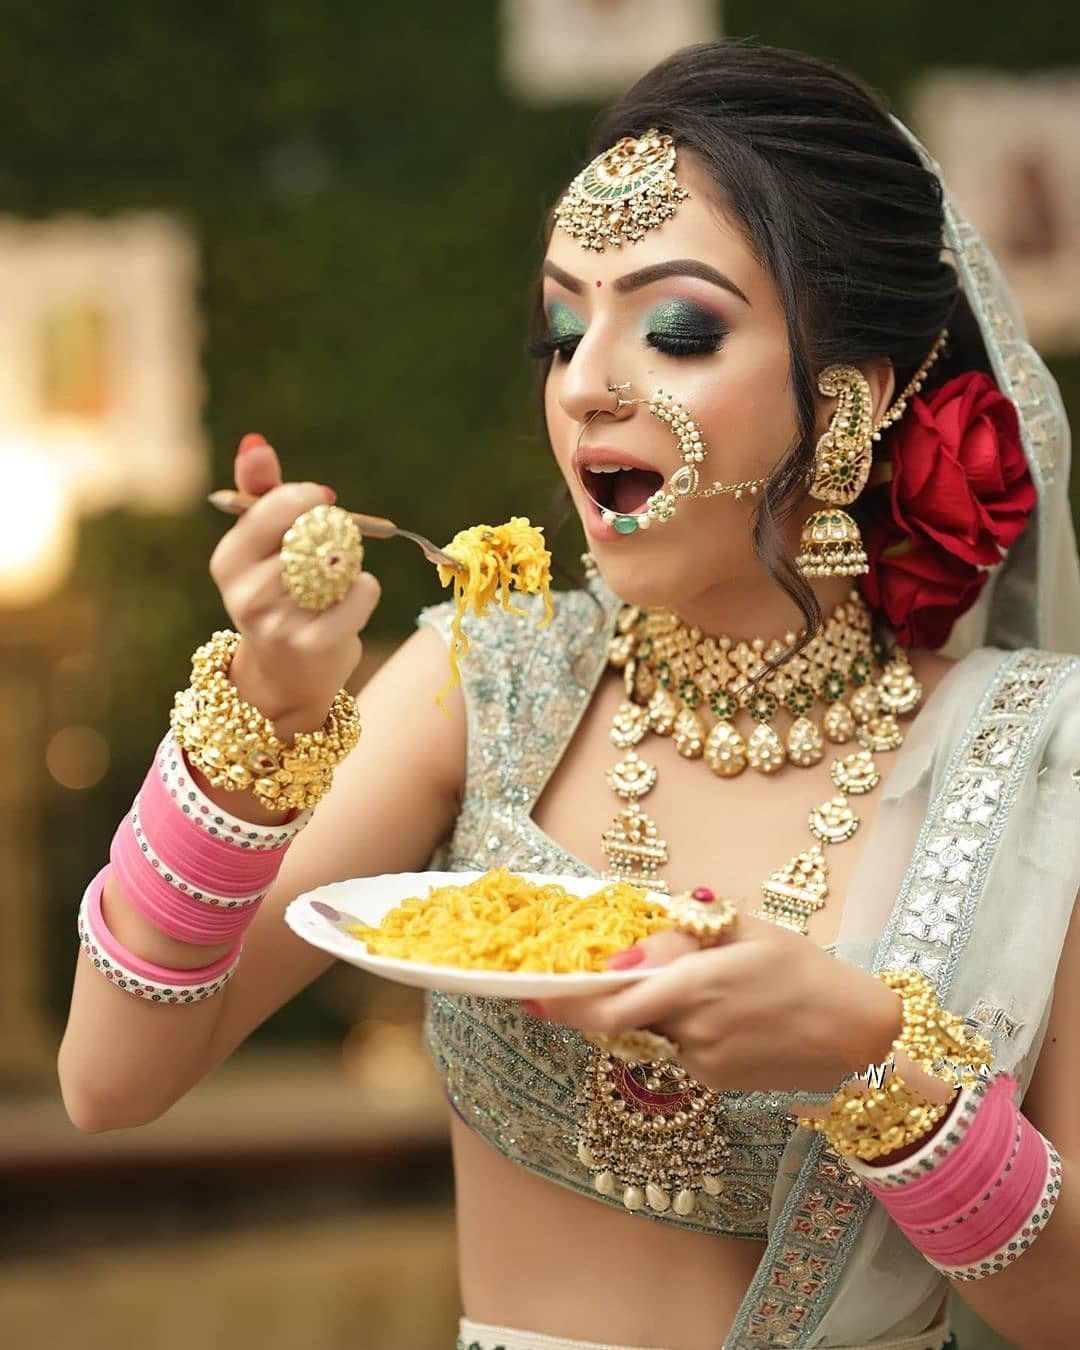 gown#indianbride#instabridal#weddinghair#weddingmakeup#weddingparty | Indian  bride photography poses, Indian wedding poses, Bride photography poses